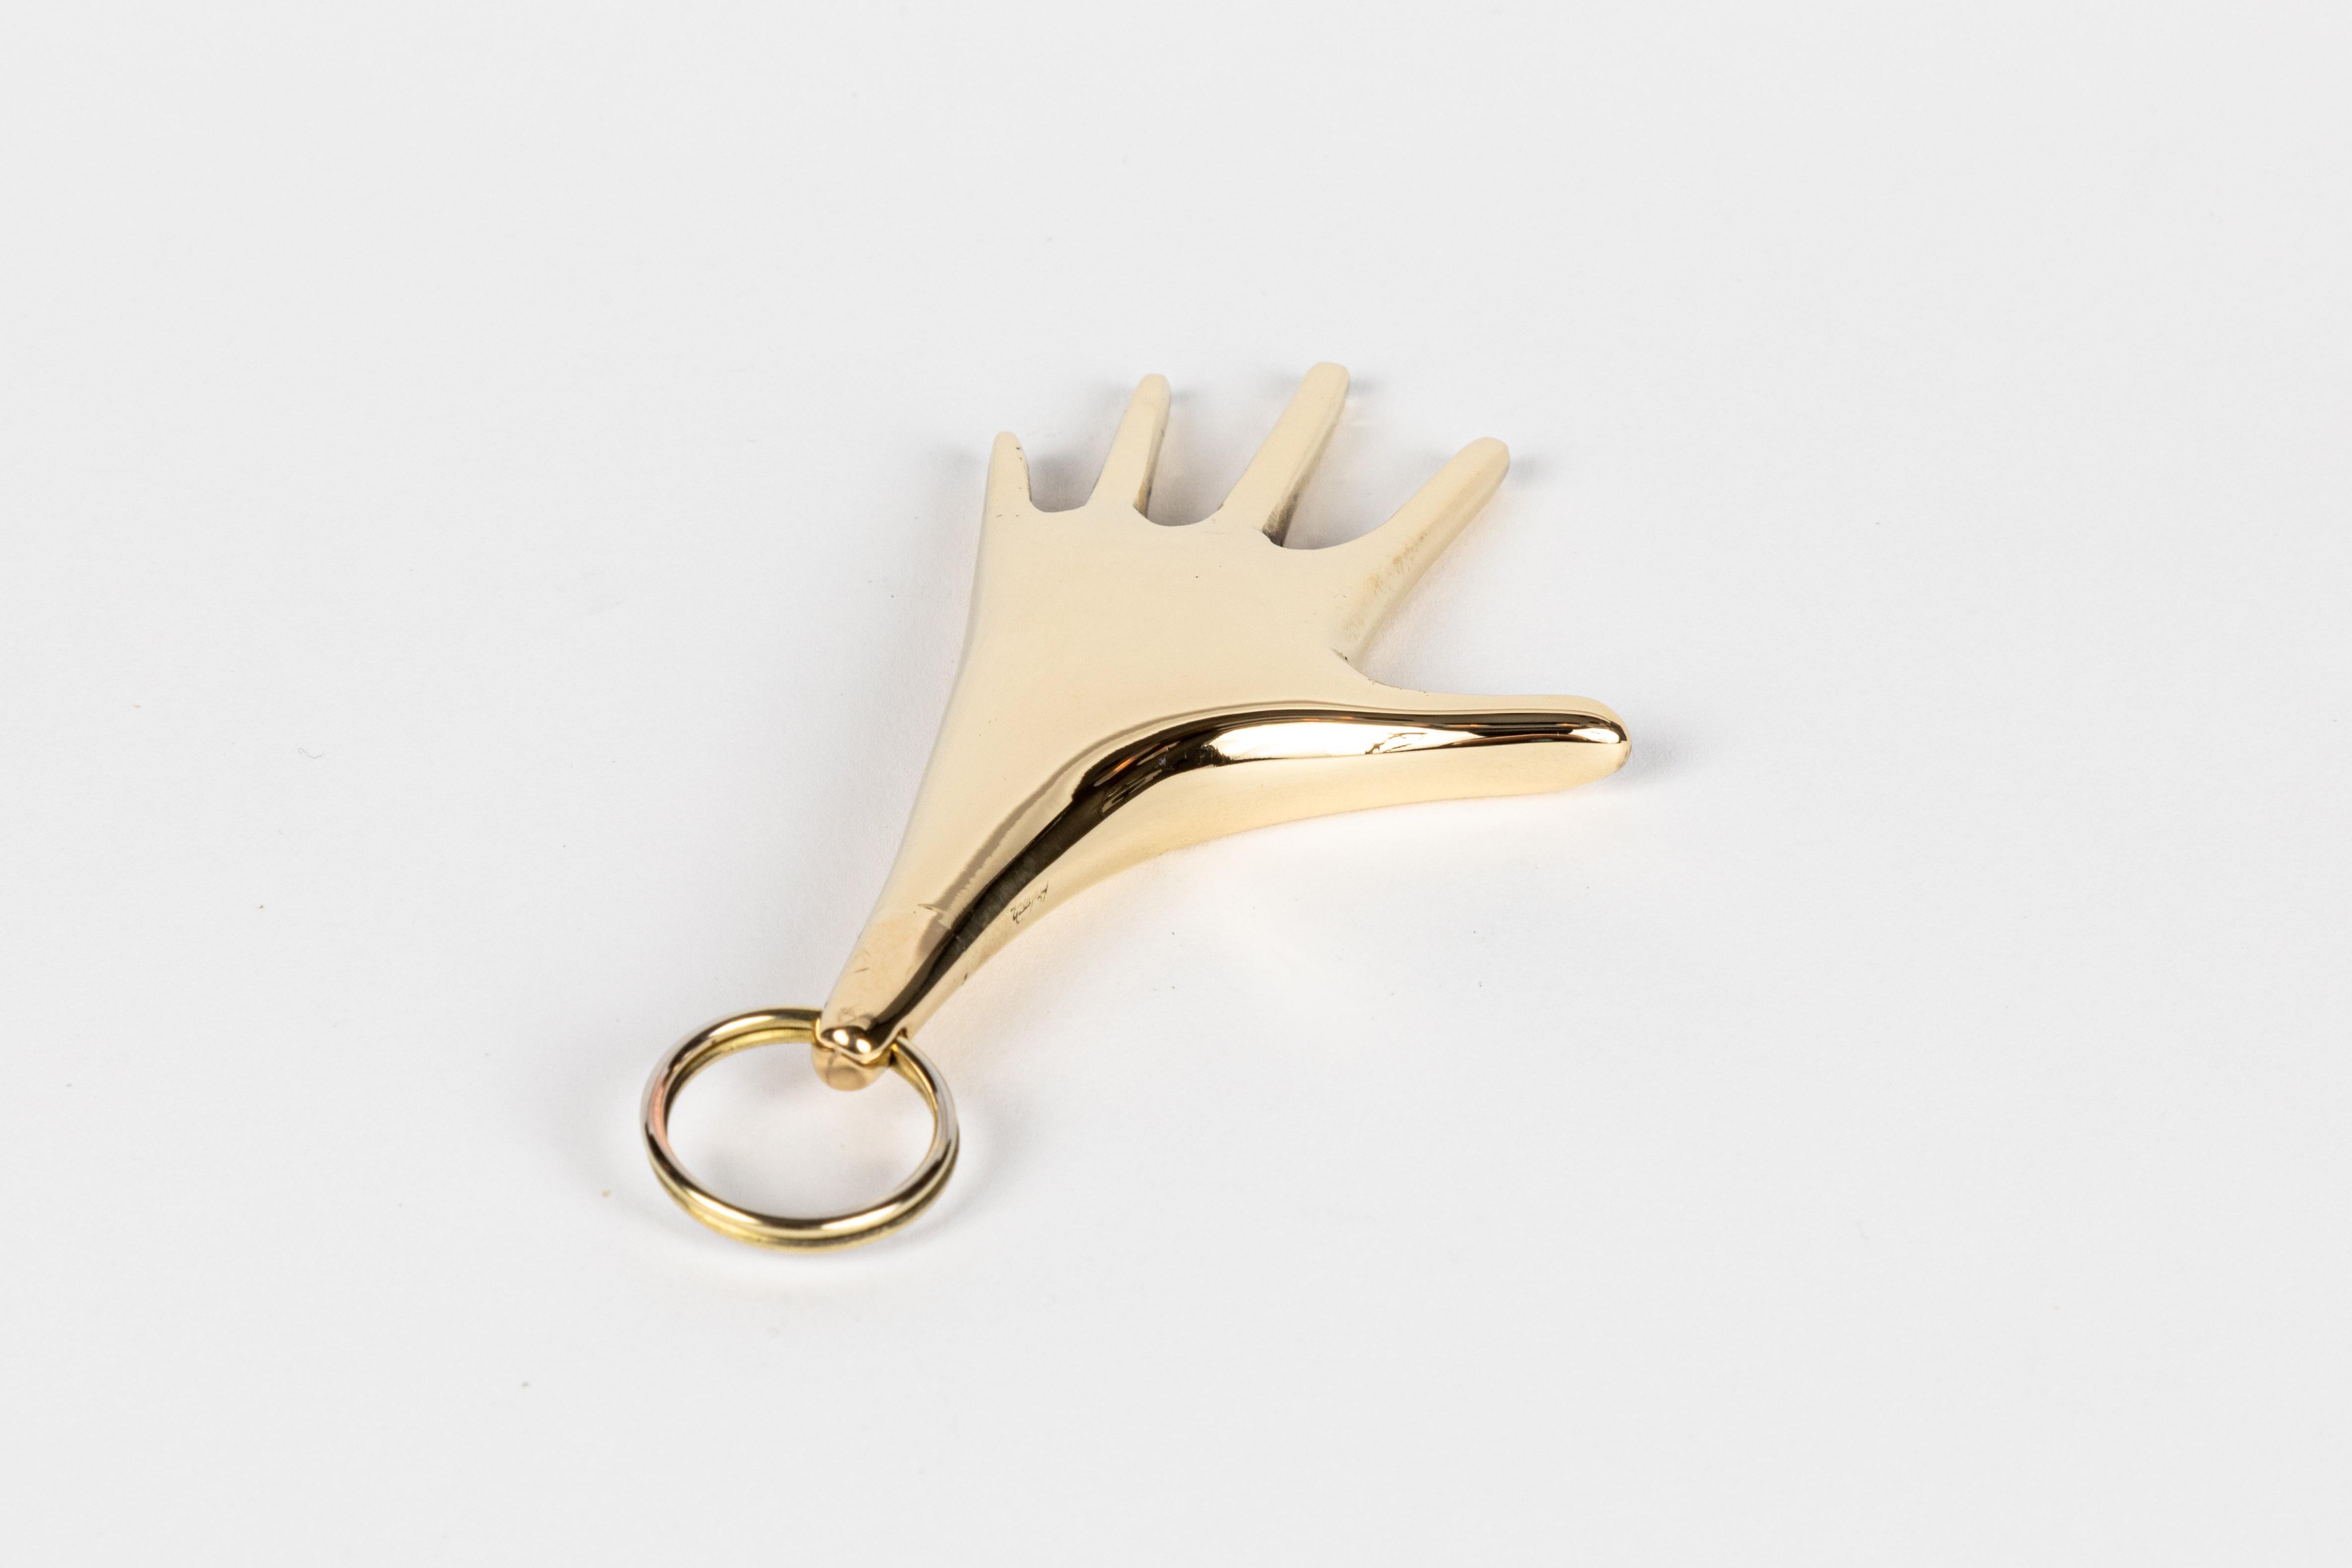 Porte-clés figurine en laiton Carl Auböck modèle #5732 'Hand'. Conçu dans les années 1950, cet objet incroyablement raffiné et sculptural est fabriqué à la main en laiton poli. 

Le prix est par article. En stock, prêt à être expédié. Disponible en